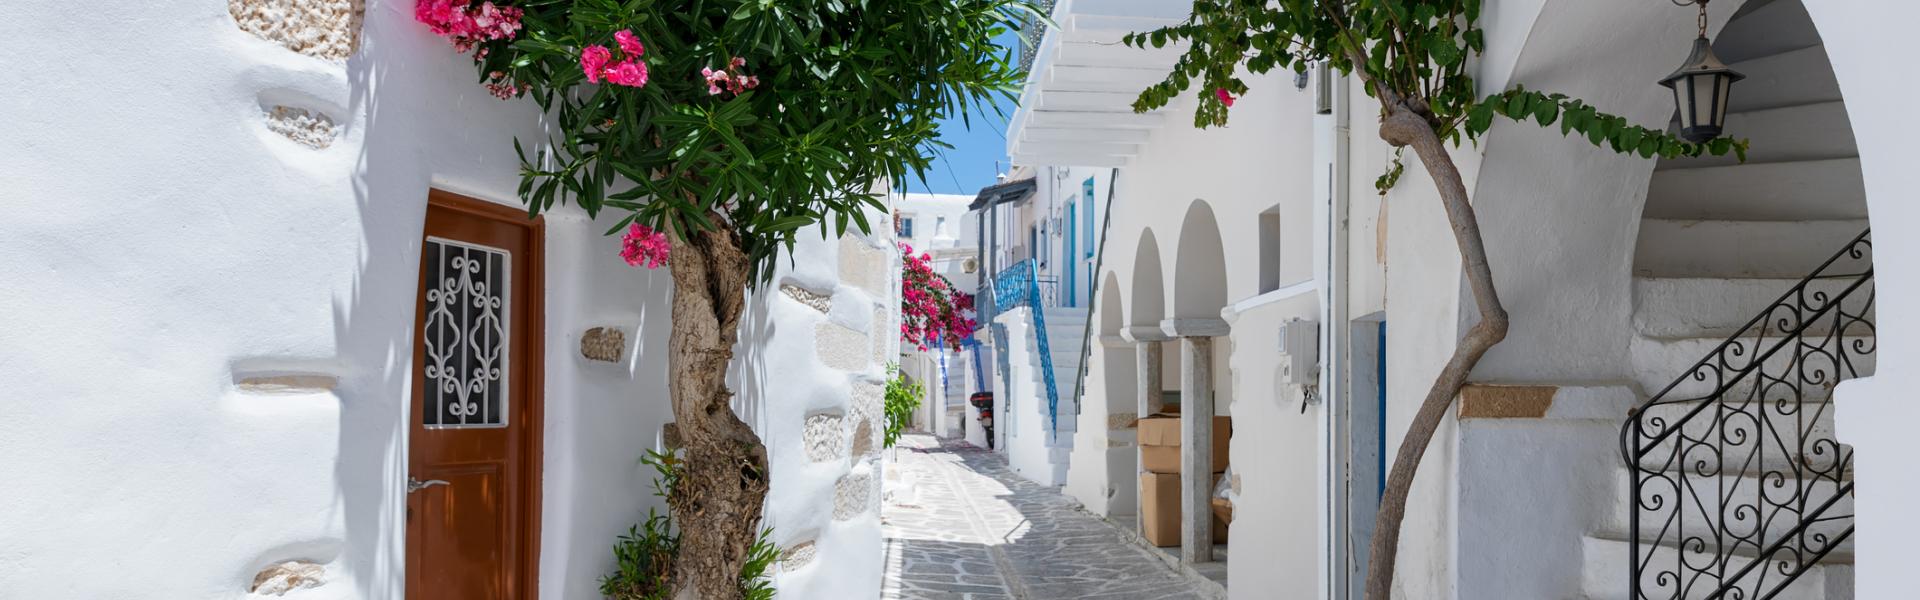 Ferienwohnungen und Ferienhäuser auf Paros - Wimdu